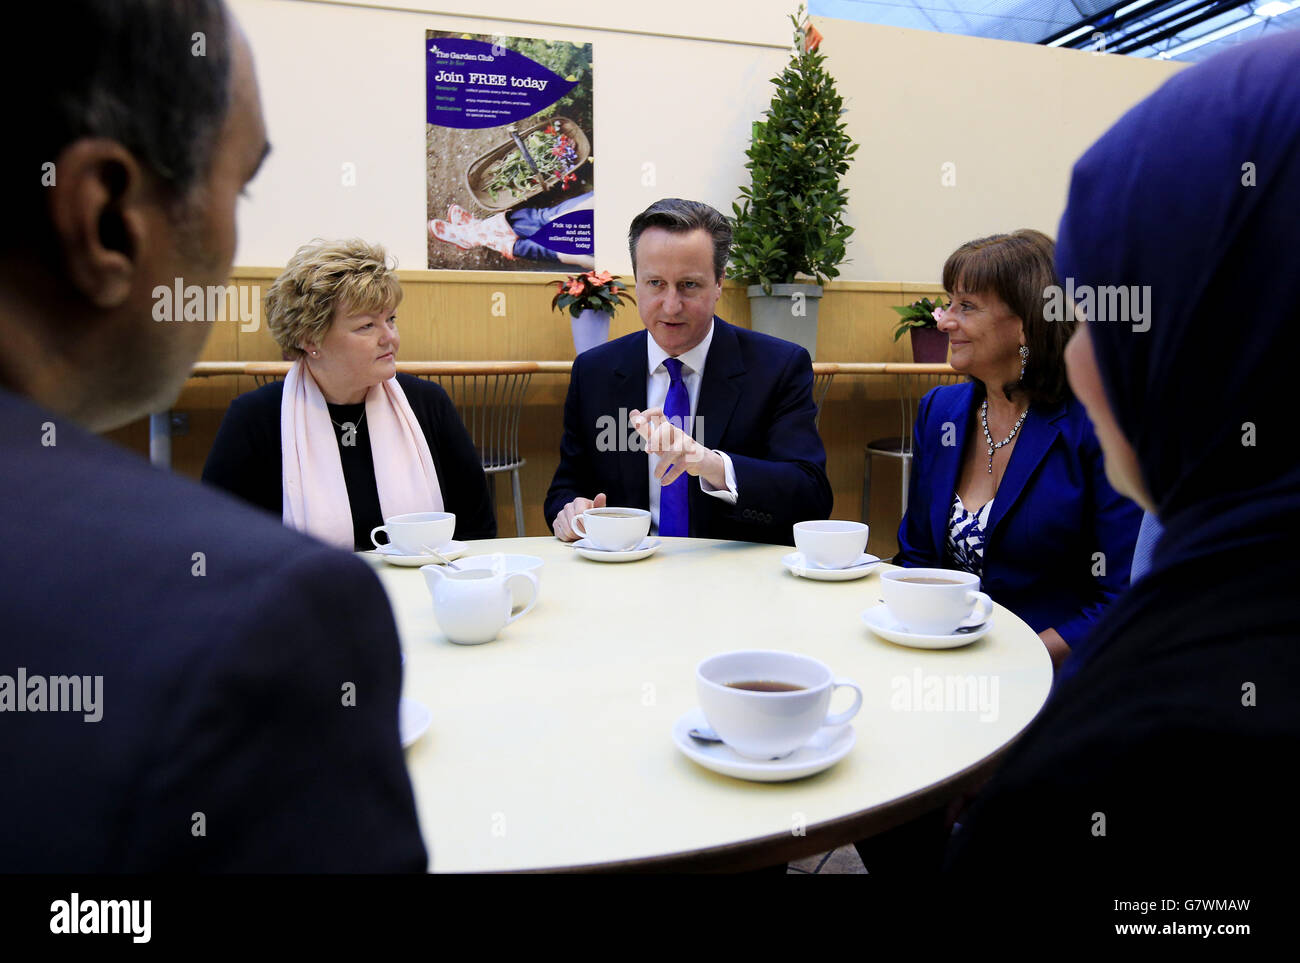 Il primo ministro David Cameron e il suo attivista per le pensioni Ros Altmann (destra), che diventerà un ministro se i conservatori saranno rieletti, parlano con persone che si avvicinano all'età pensionabile al Melbicks Garden Centre di Birmingham, durante la campagna elettorale generale. Foto Stock